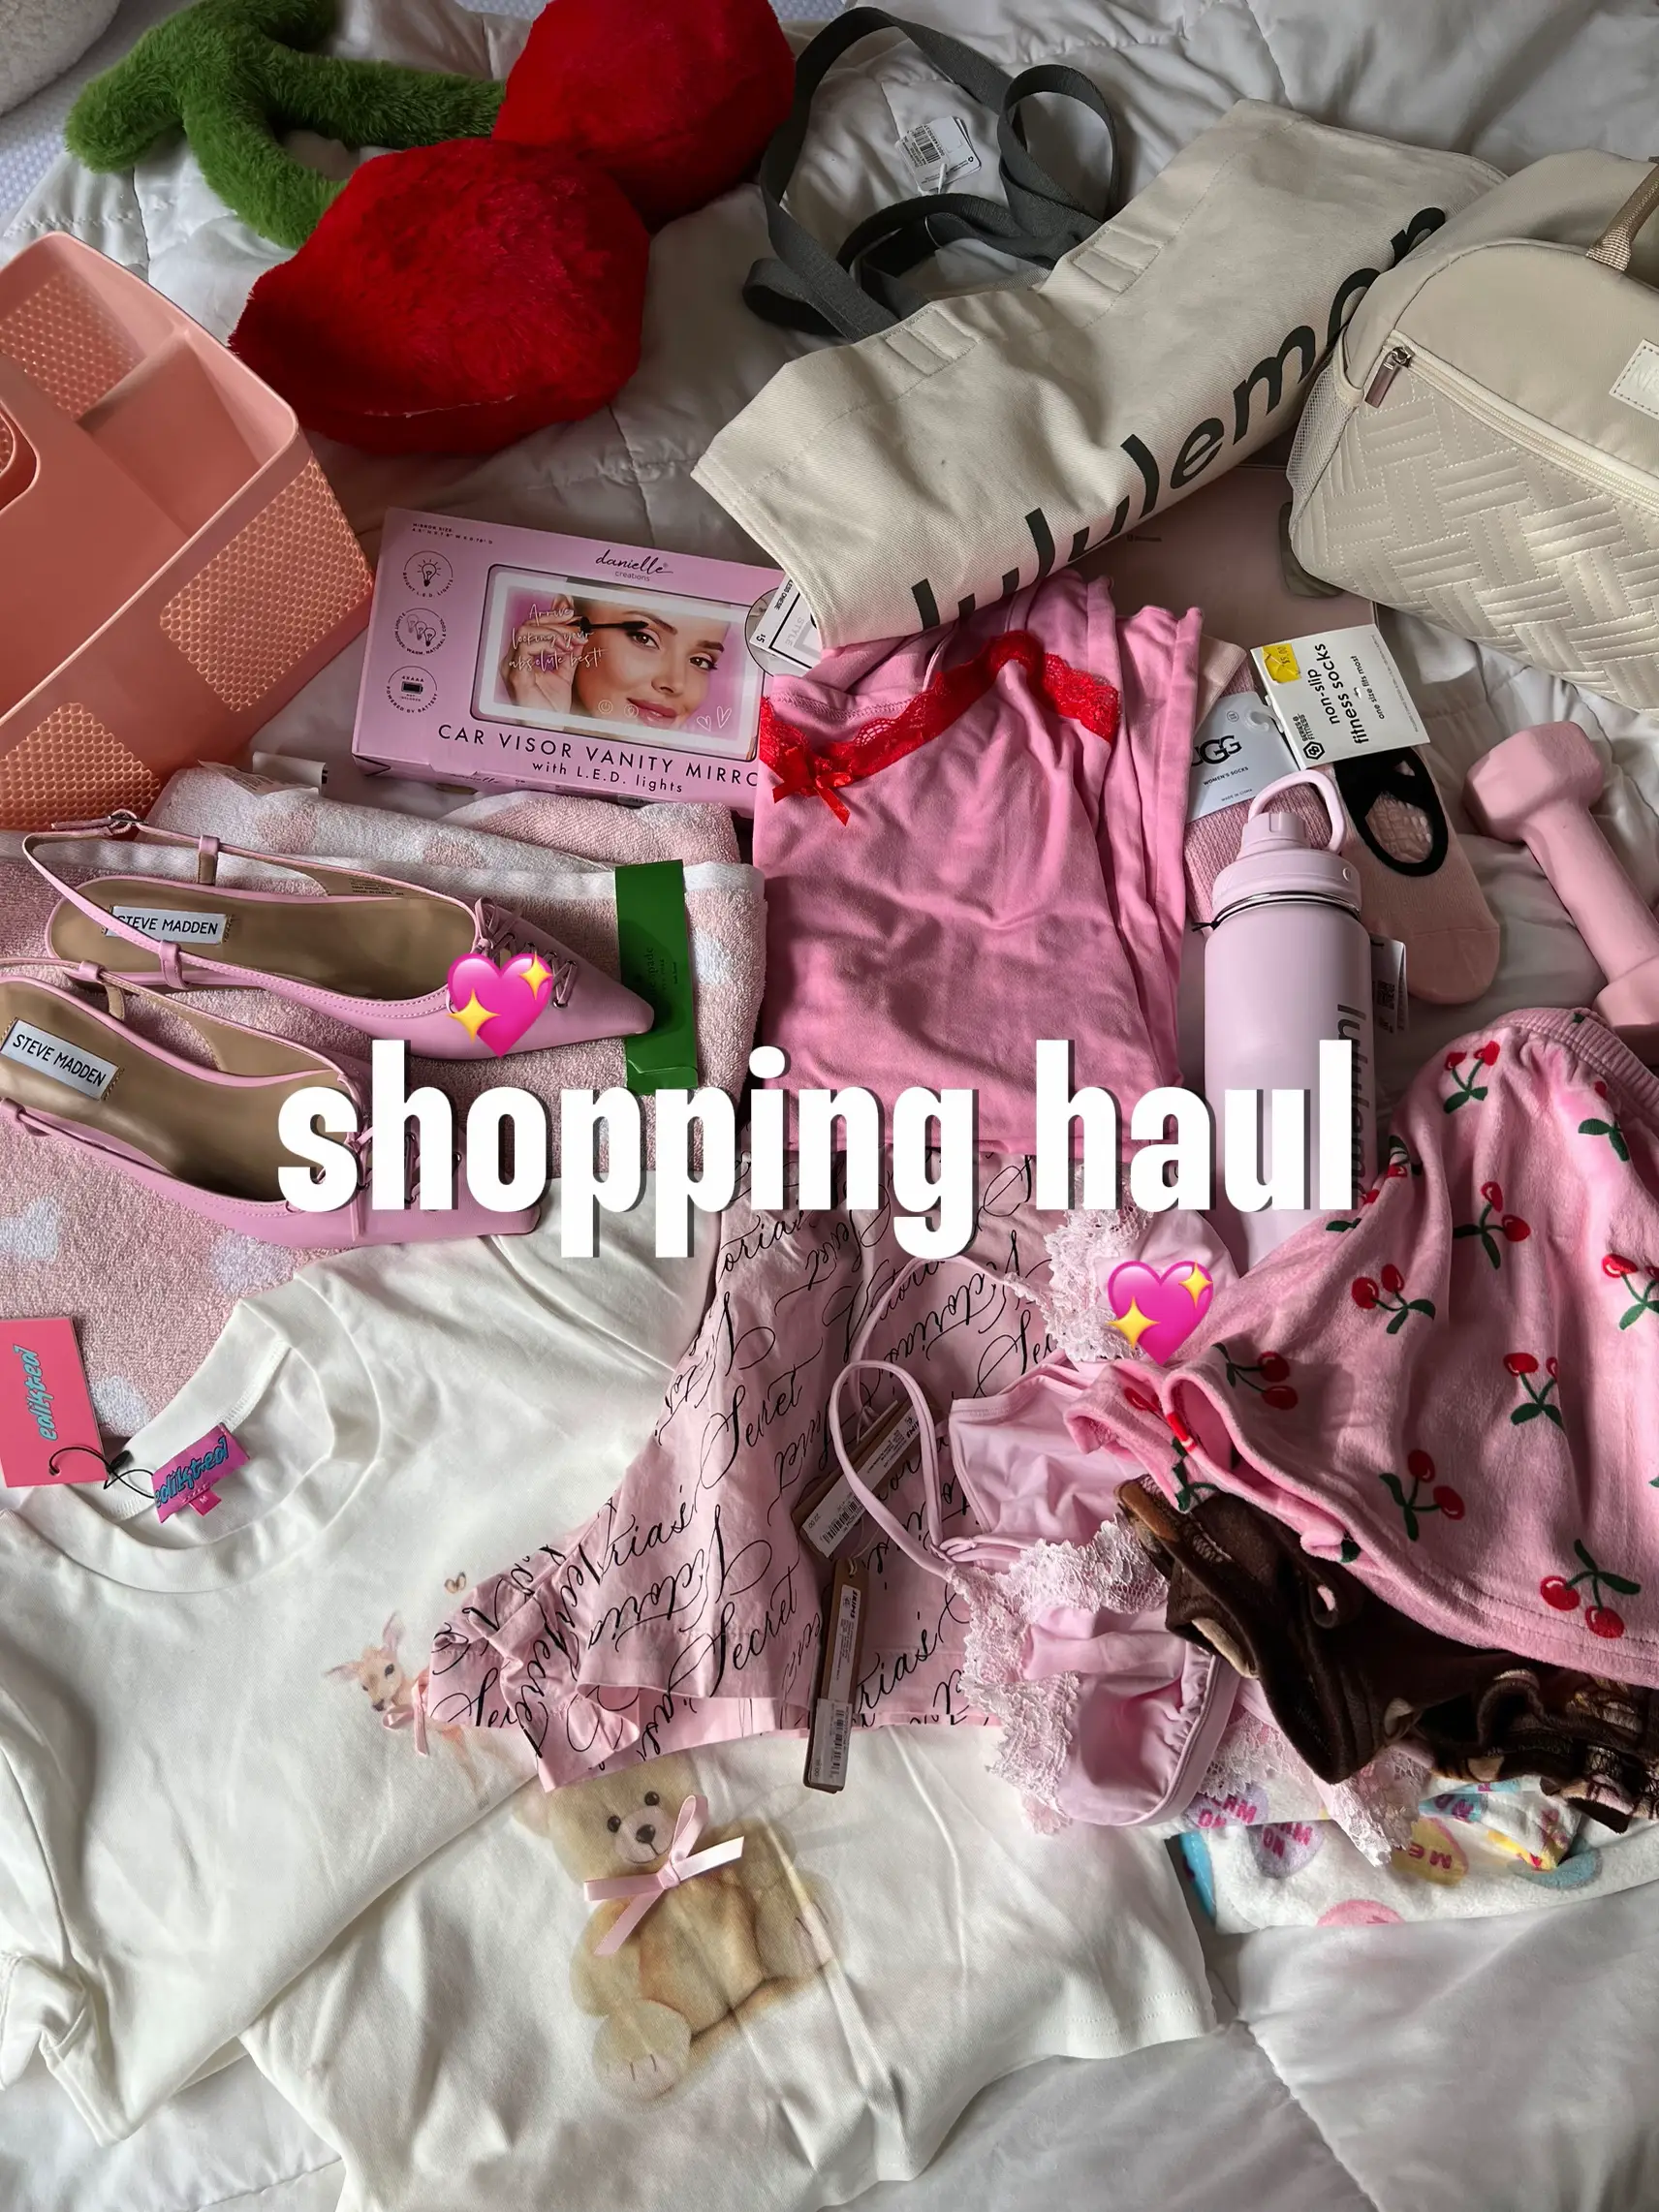 Shoppinghauladdict - Lemon8 Search